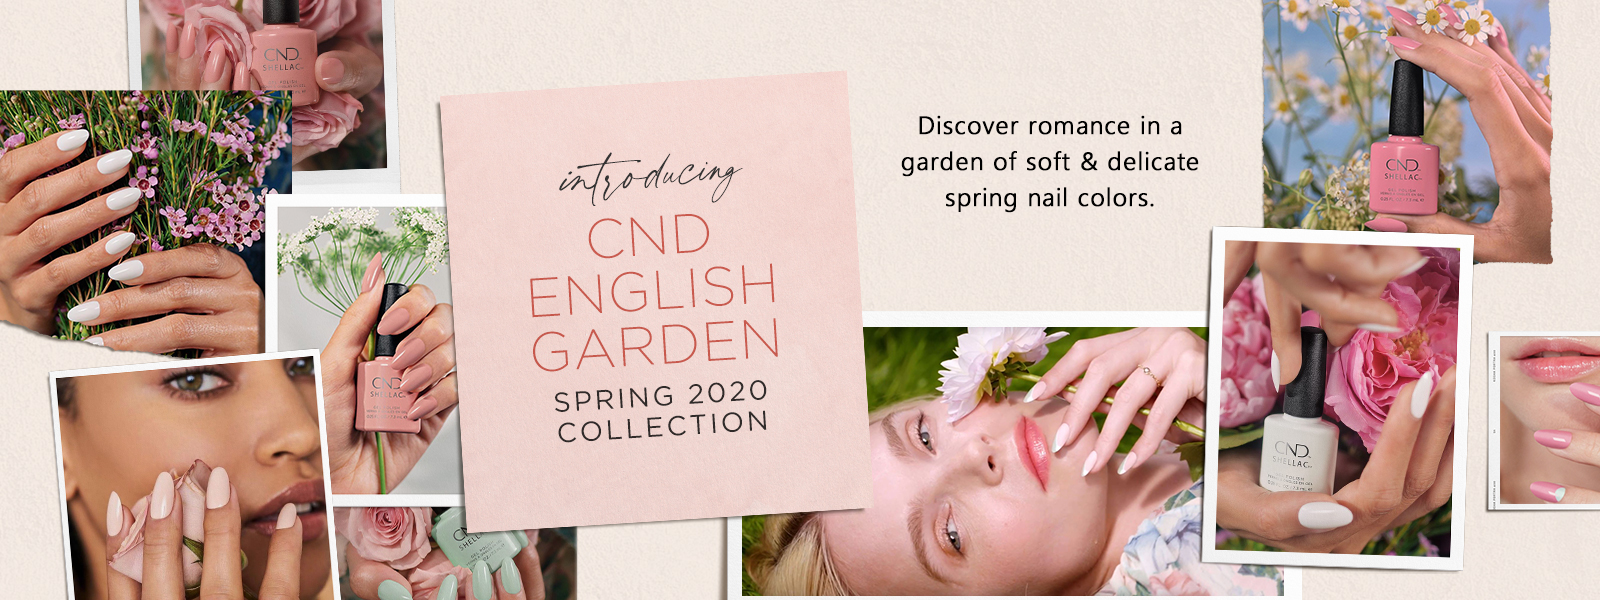 CND Spring 2020 English Garden Collection